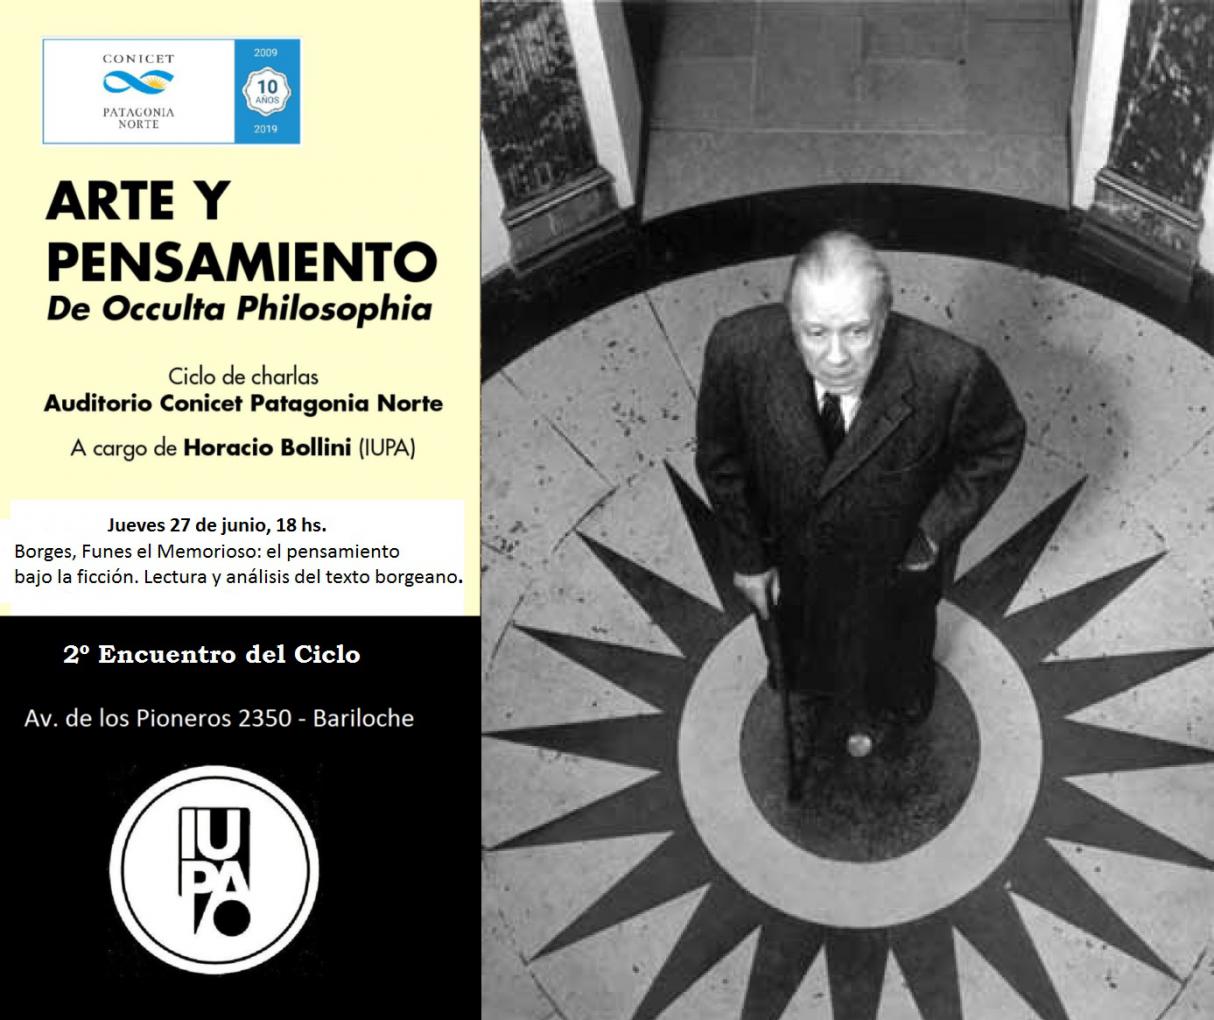 Ciclo de charlas Arte y Pensamiento: Funes el memorioso, cuento de Borges